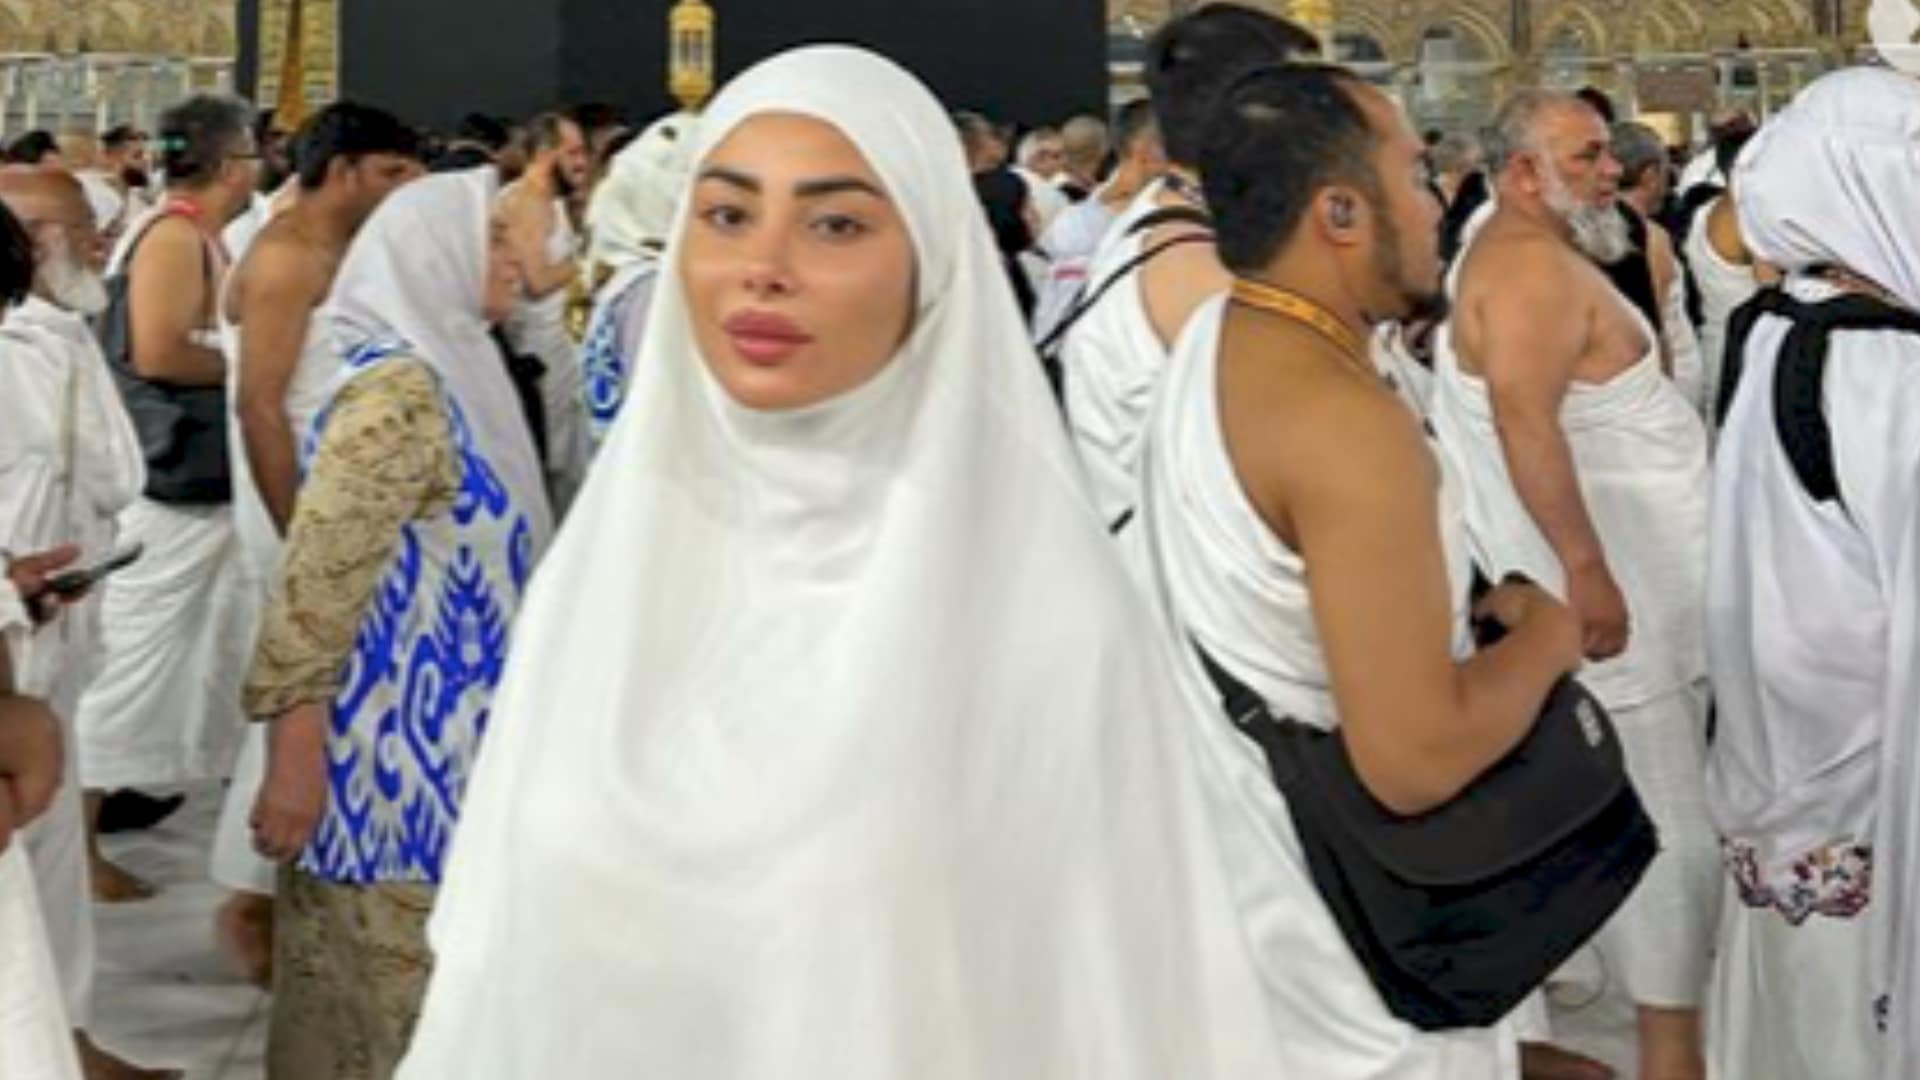 Maeva Ghennam : prête à porter le voile après son pèlerinage à La Mecque ? Elle s'exprime